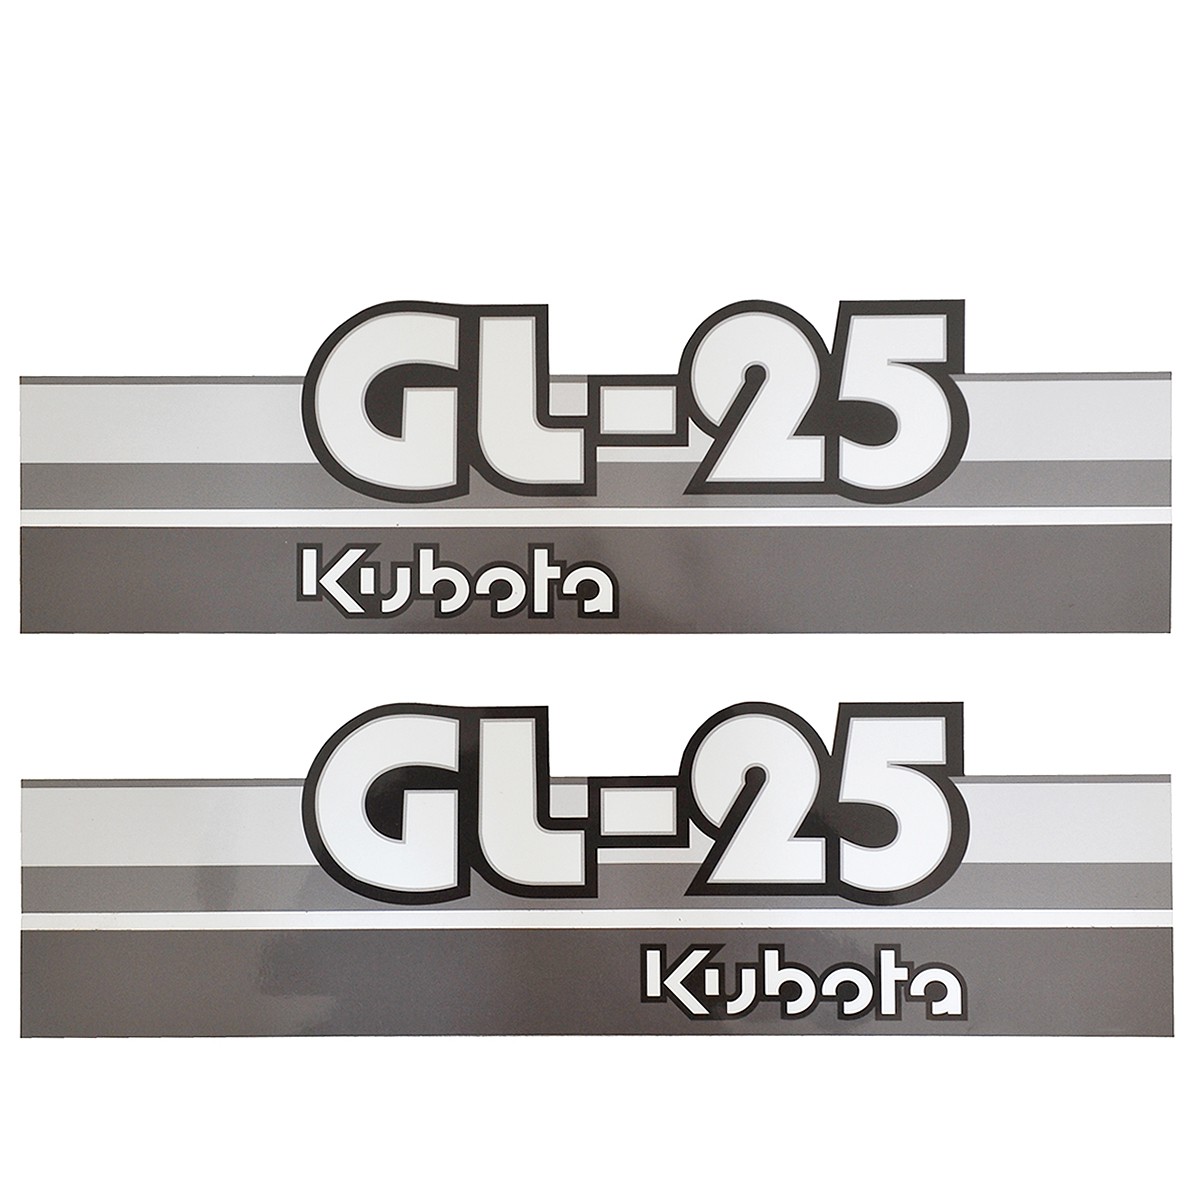 Nálepky Kubota GL25